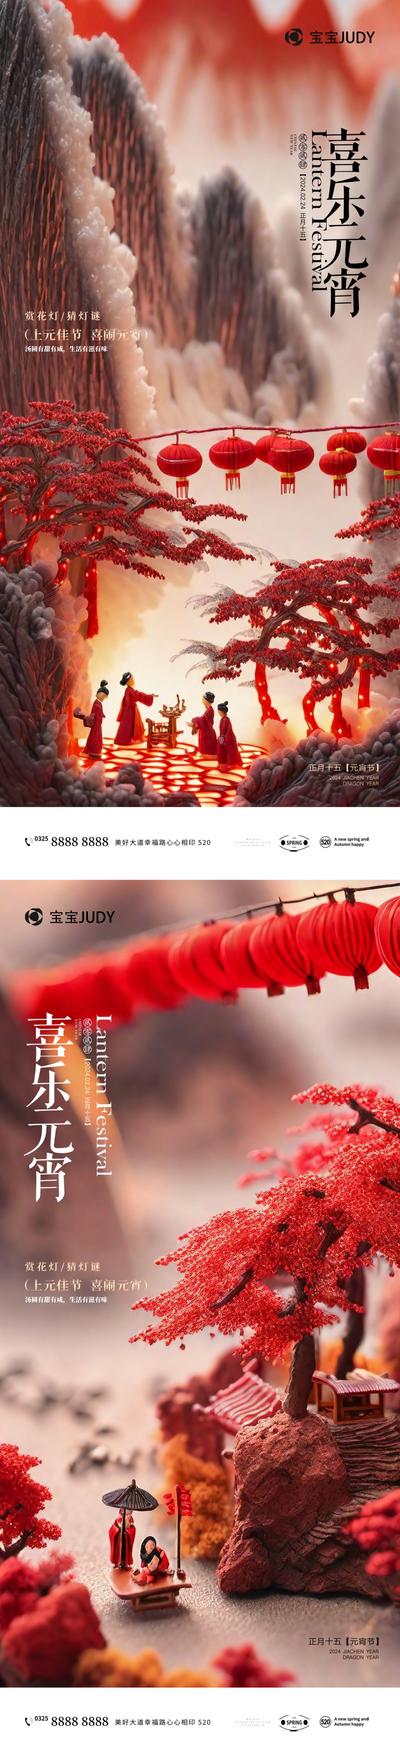 【南门网】广告 海报 节日 元宵 摄影 微距 氛围 灯笼 AI 仕女 系列